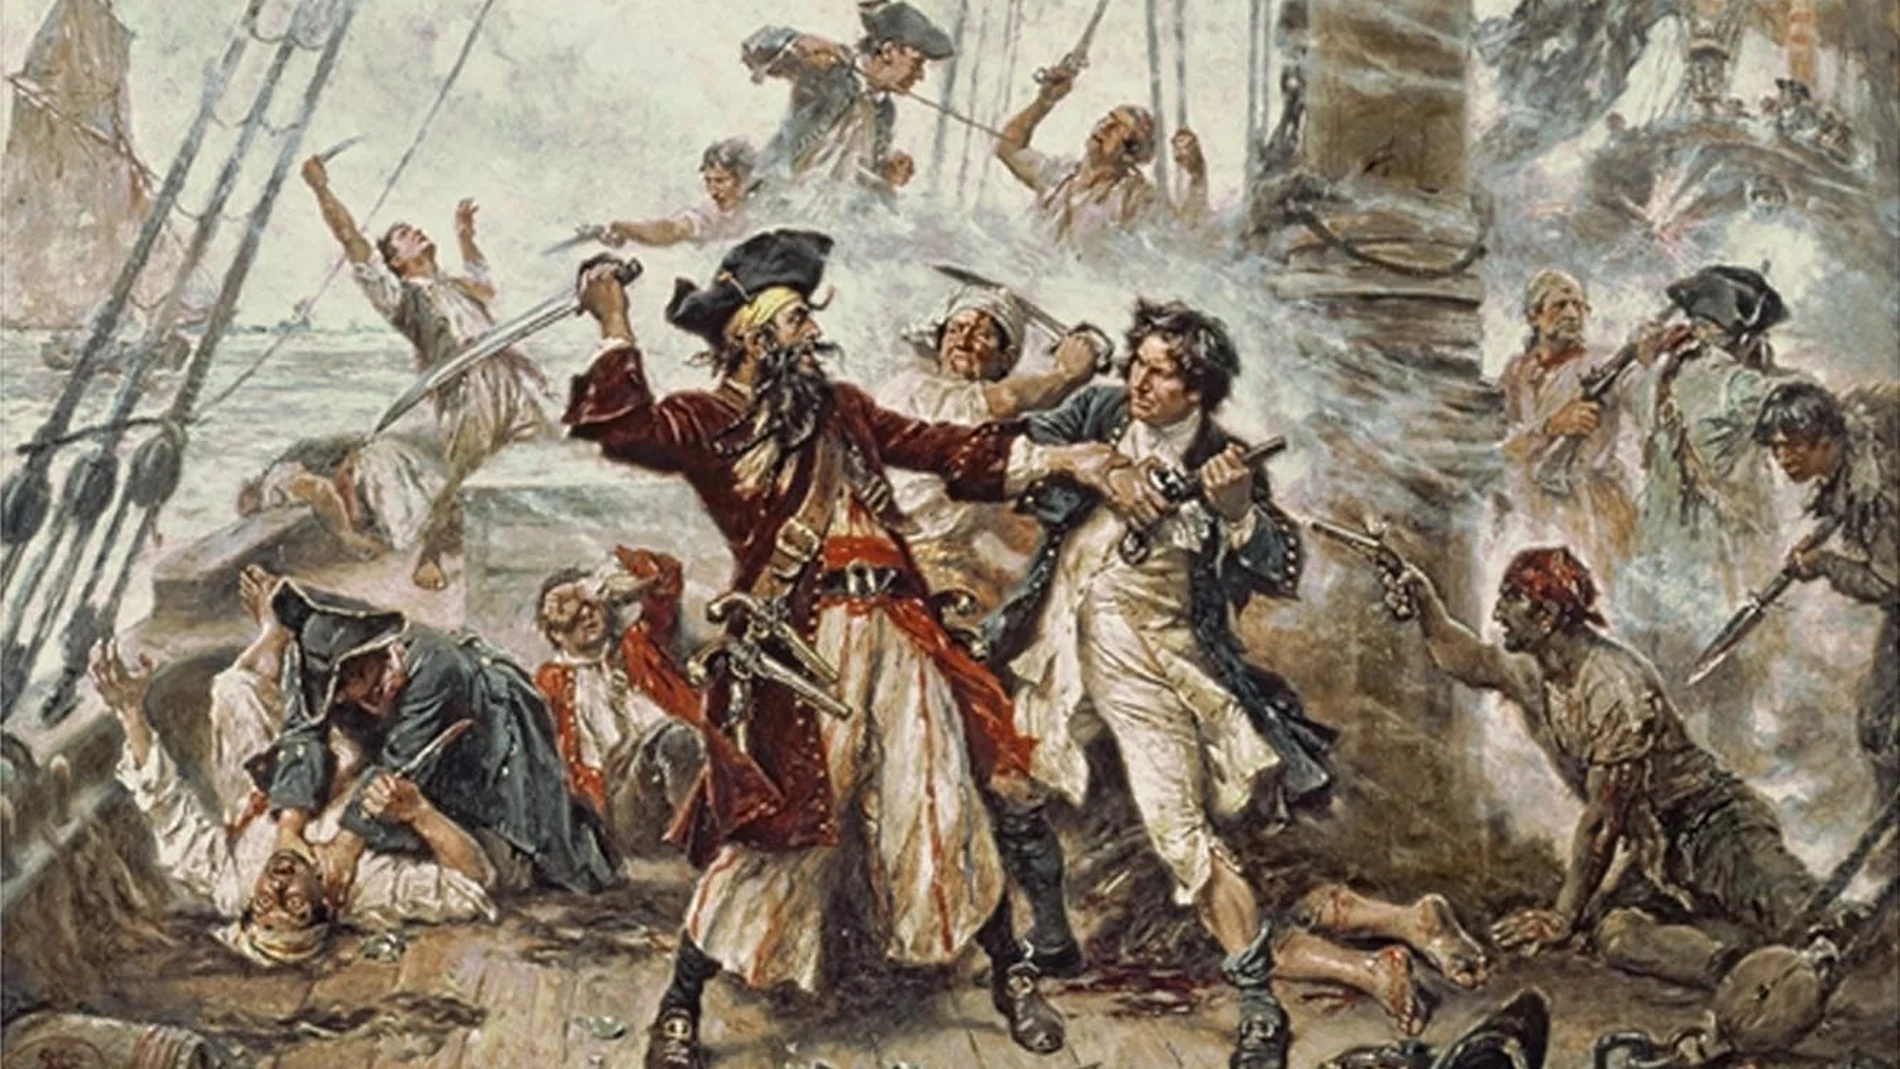 Significado de la Calavera en la Bandera Pirata